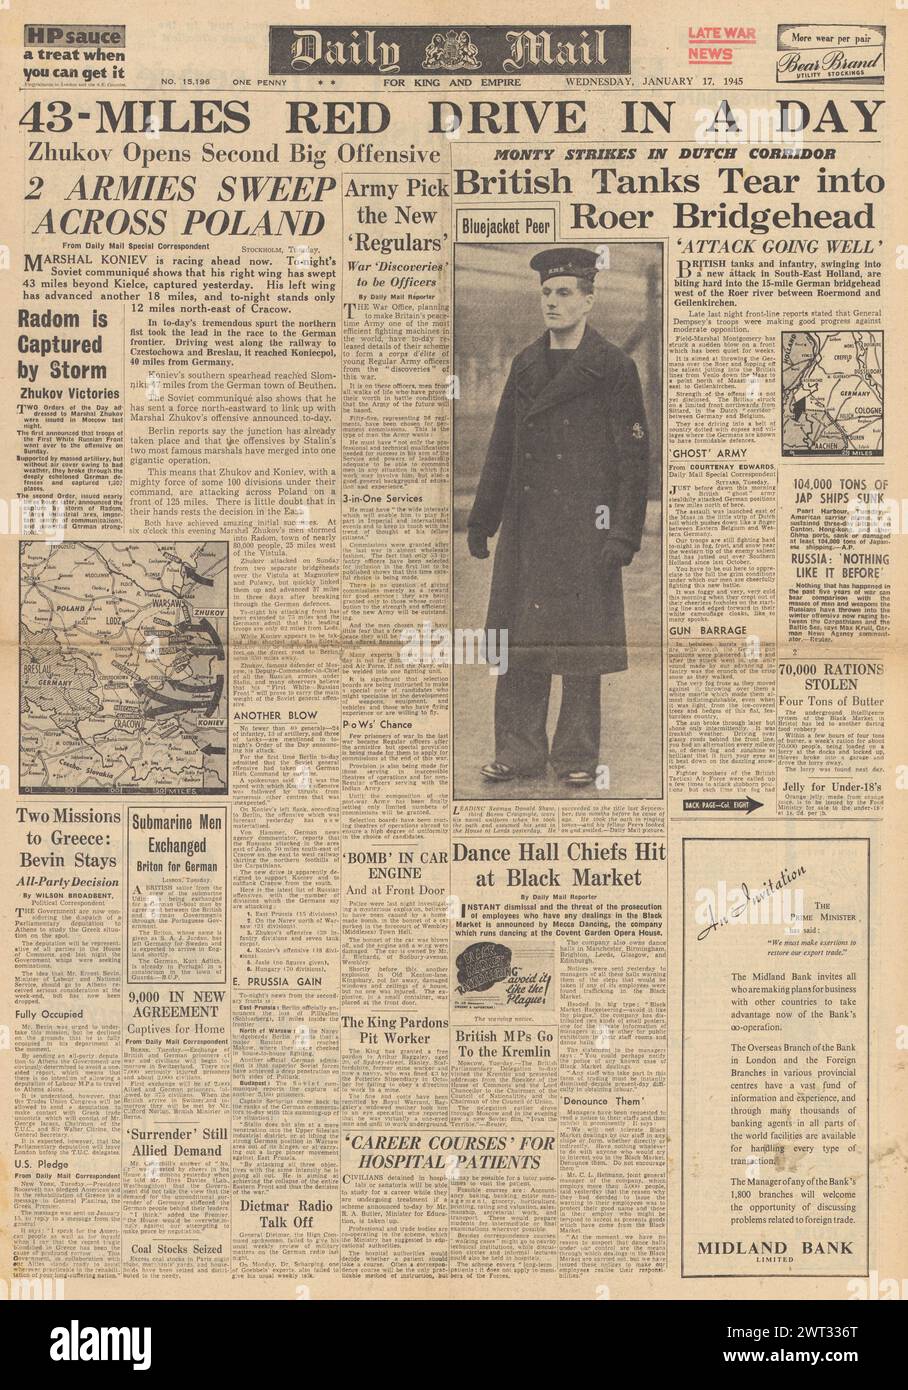 1945 la prima pagina del Daily mail riportava l'avanzata dell'Armata Rossa in Polonia, la Battaglia delle Ardenne e le forze britanniche avanzavano in Olanda fino al confine tedesco Foto Stock